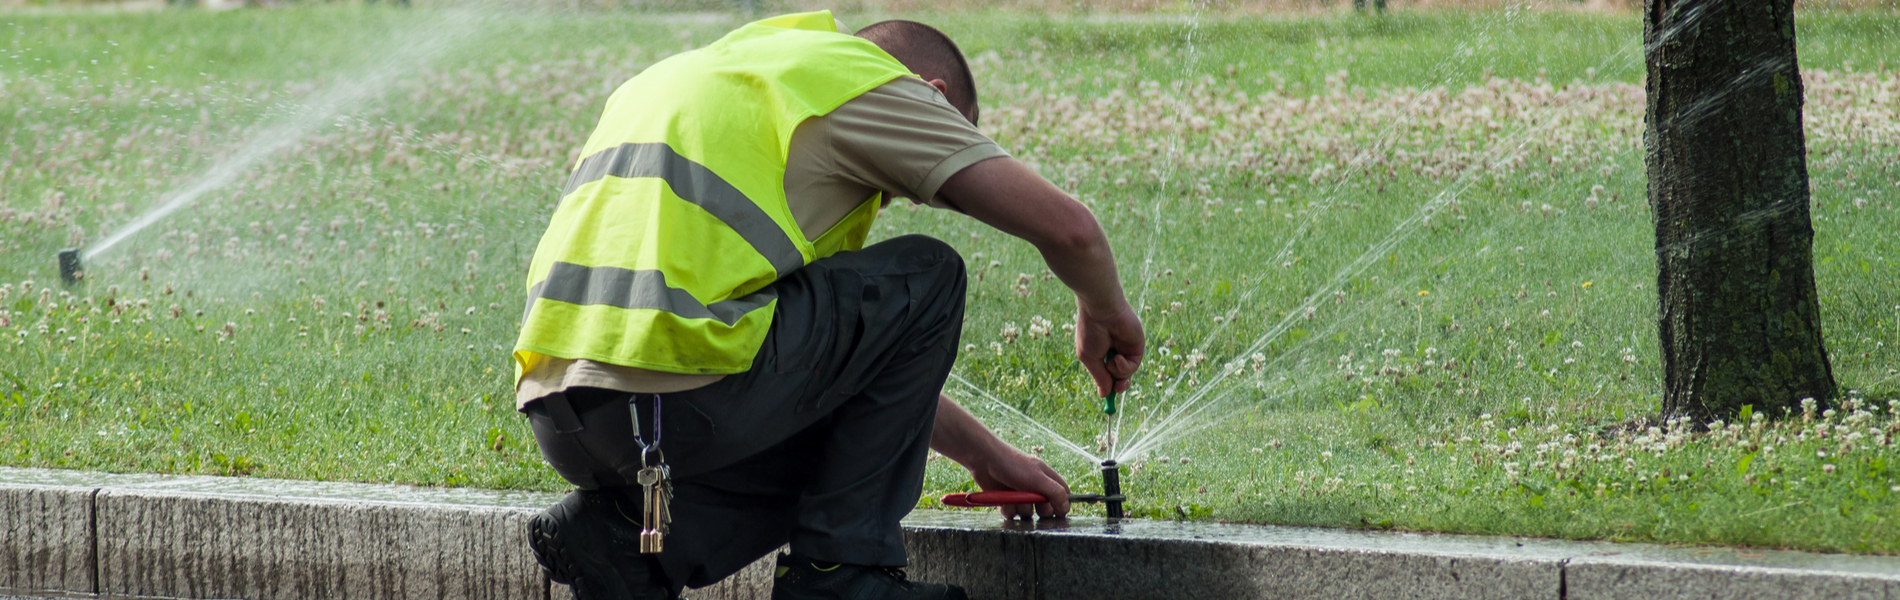 Ellisville, MO irrigation repair | professional Ellisville, MO irrigation repair services | Lawn Sprinklers St. Louis